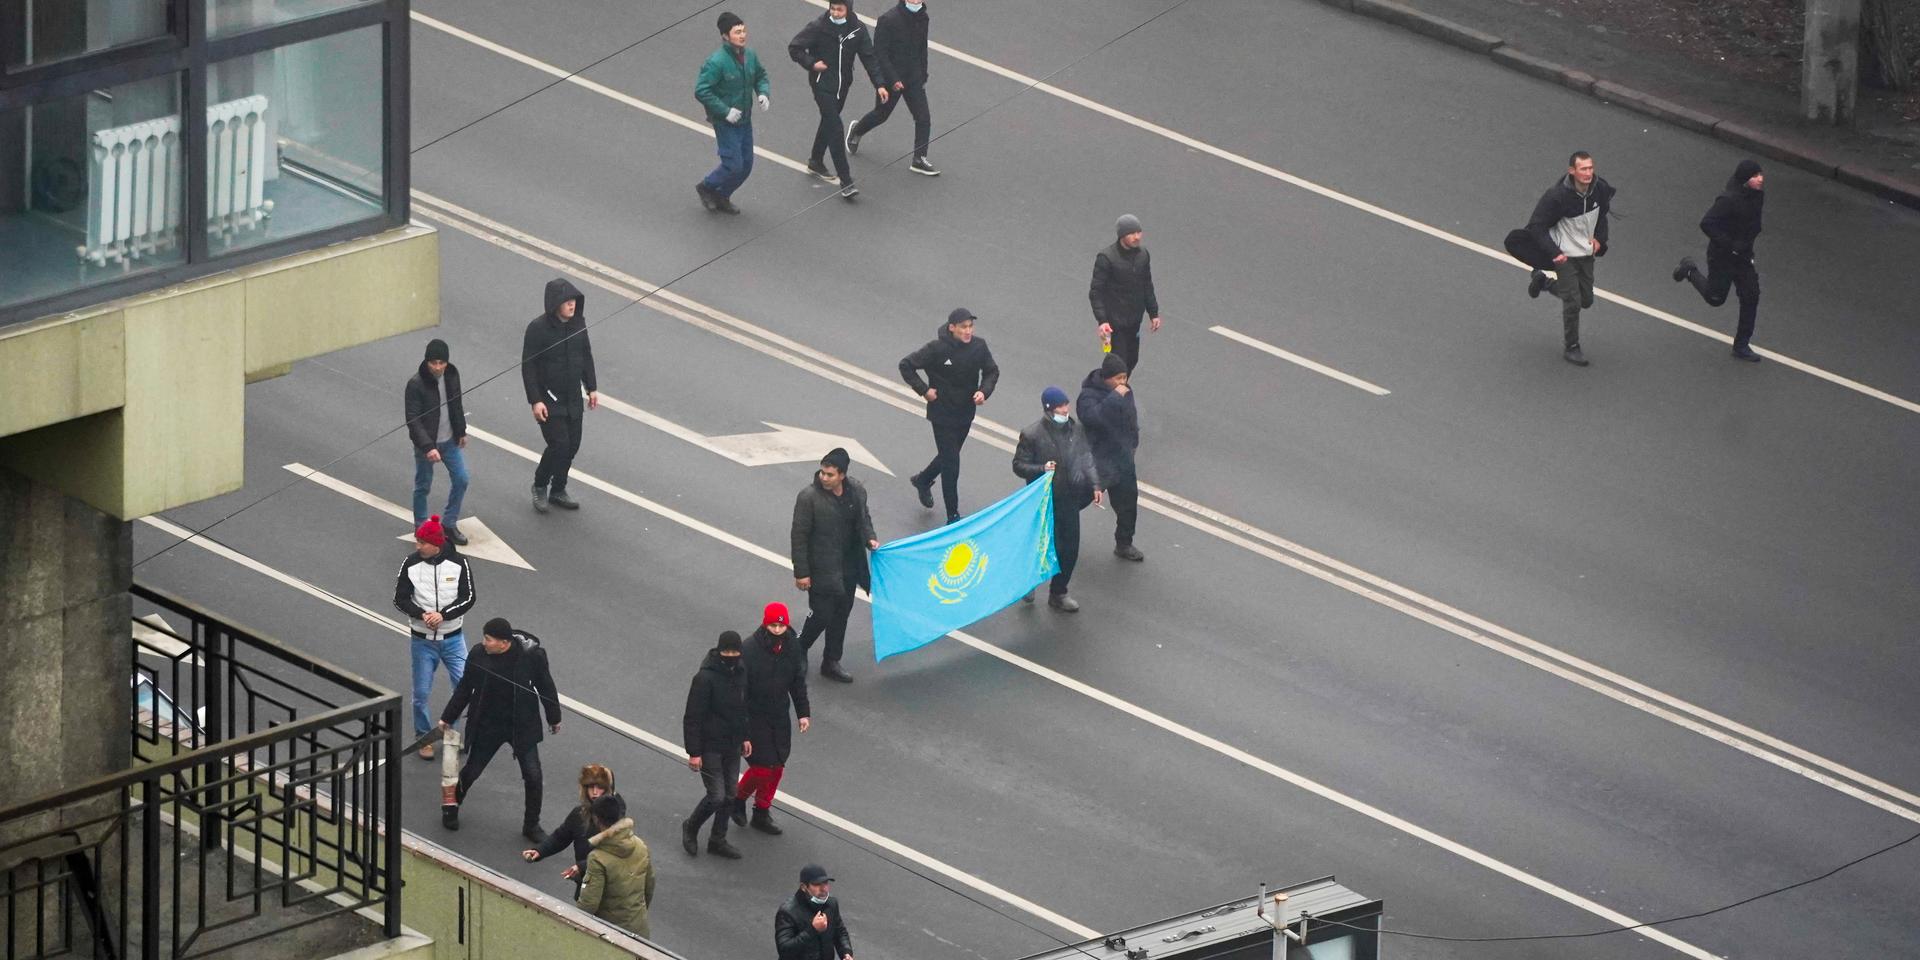 Beskjutna. Demokratiaktivister i Kazakstan besköts i början av året av militären, under demonstrationer.